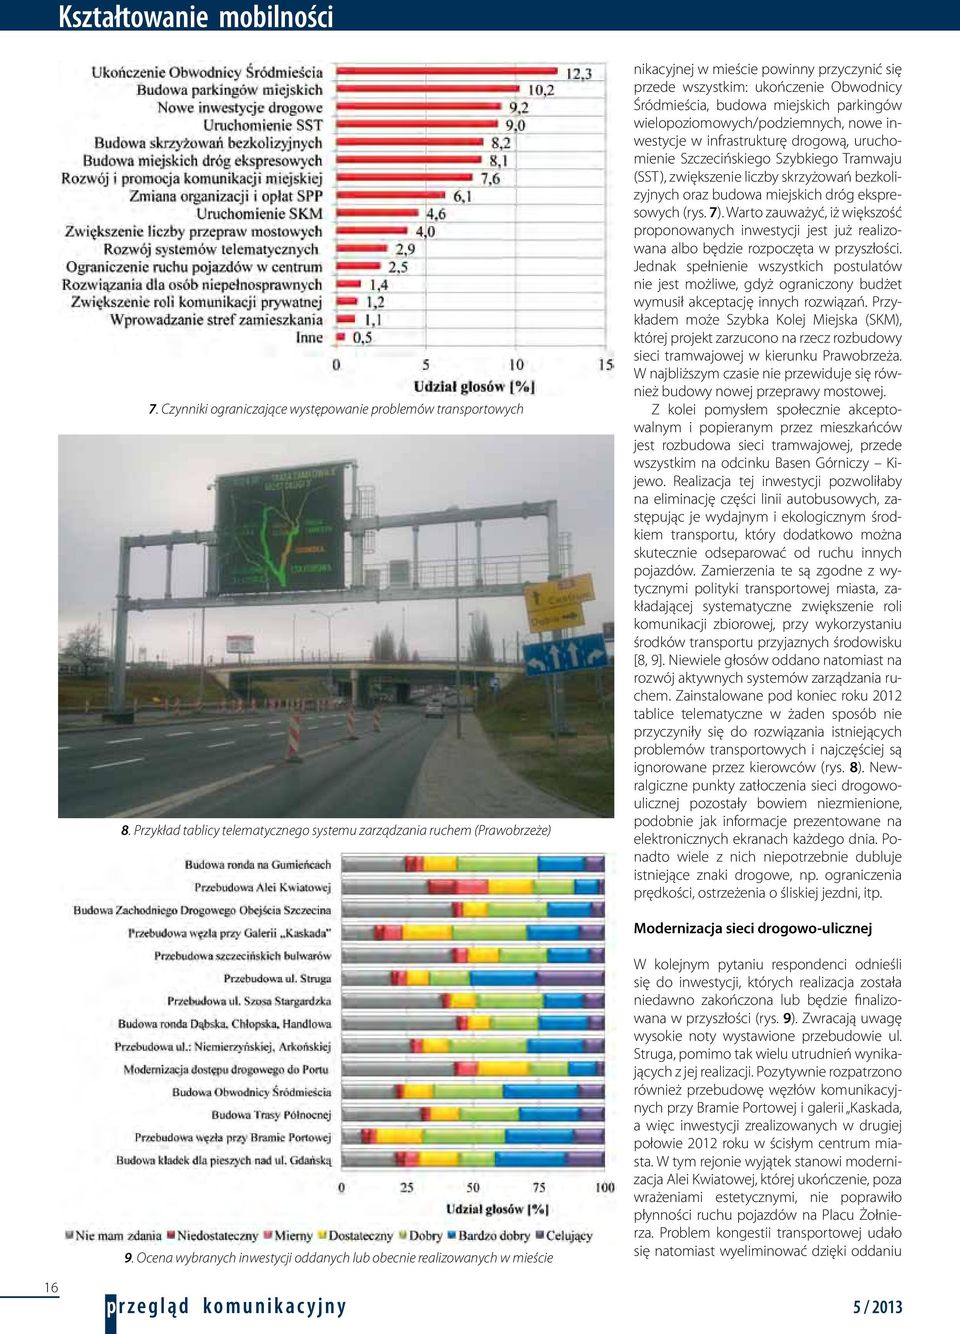 wielopoziomowych/podziemnych, nowe inwestycje w infrastrukturę drogową, uruchomienie Szczecińskiego Szybkiego Tramwaju (SST), zwiększenie liczby skrzyżowań bezkolizyjnych oraz budowa miejskich dróg